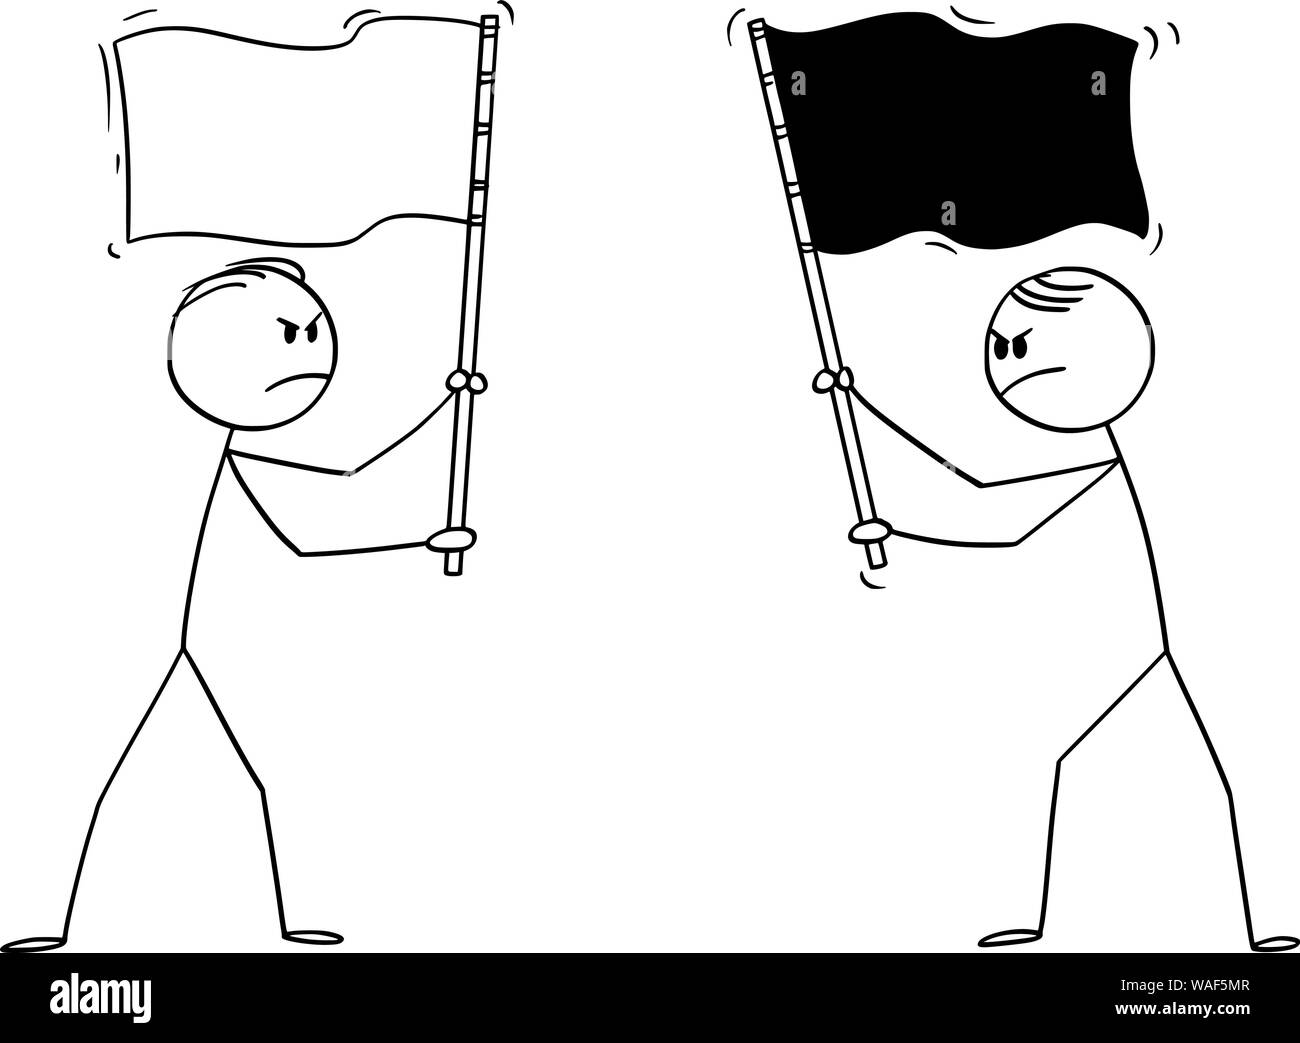 Vector cartoon stick figure dessin illustration conceptuelle de deux hommes en colère, hommes politiques ou hommes d'holding drapeaux différents. Notion de concurrence et de l'hostilité. Illustration de Vecteur